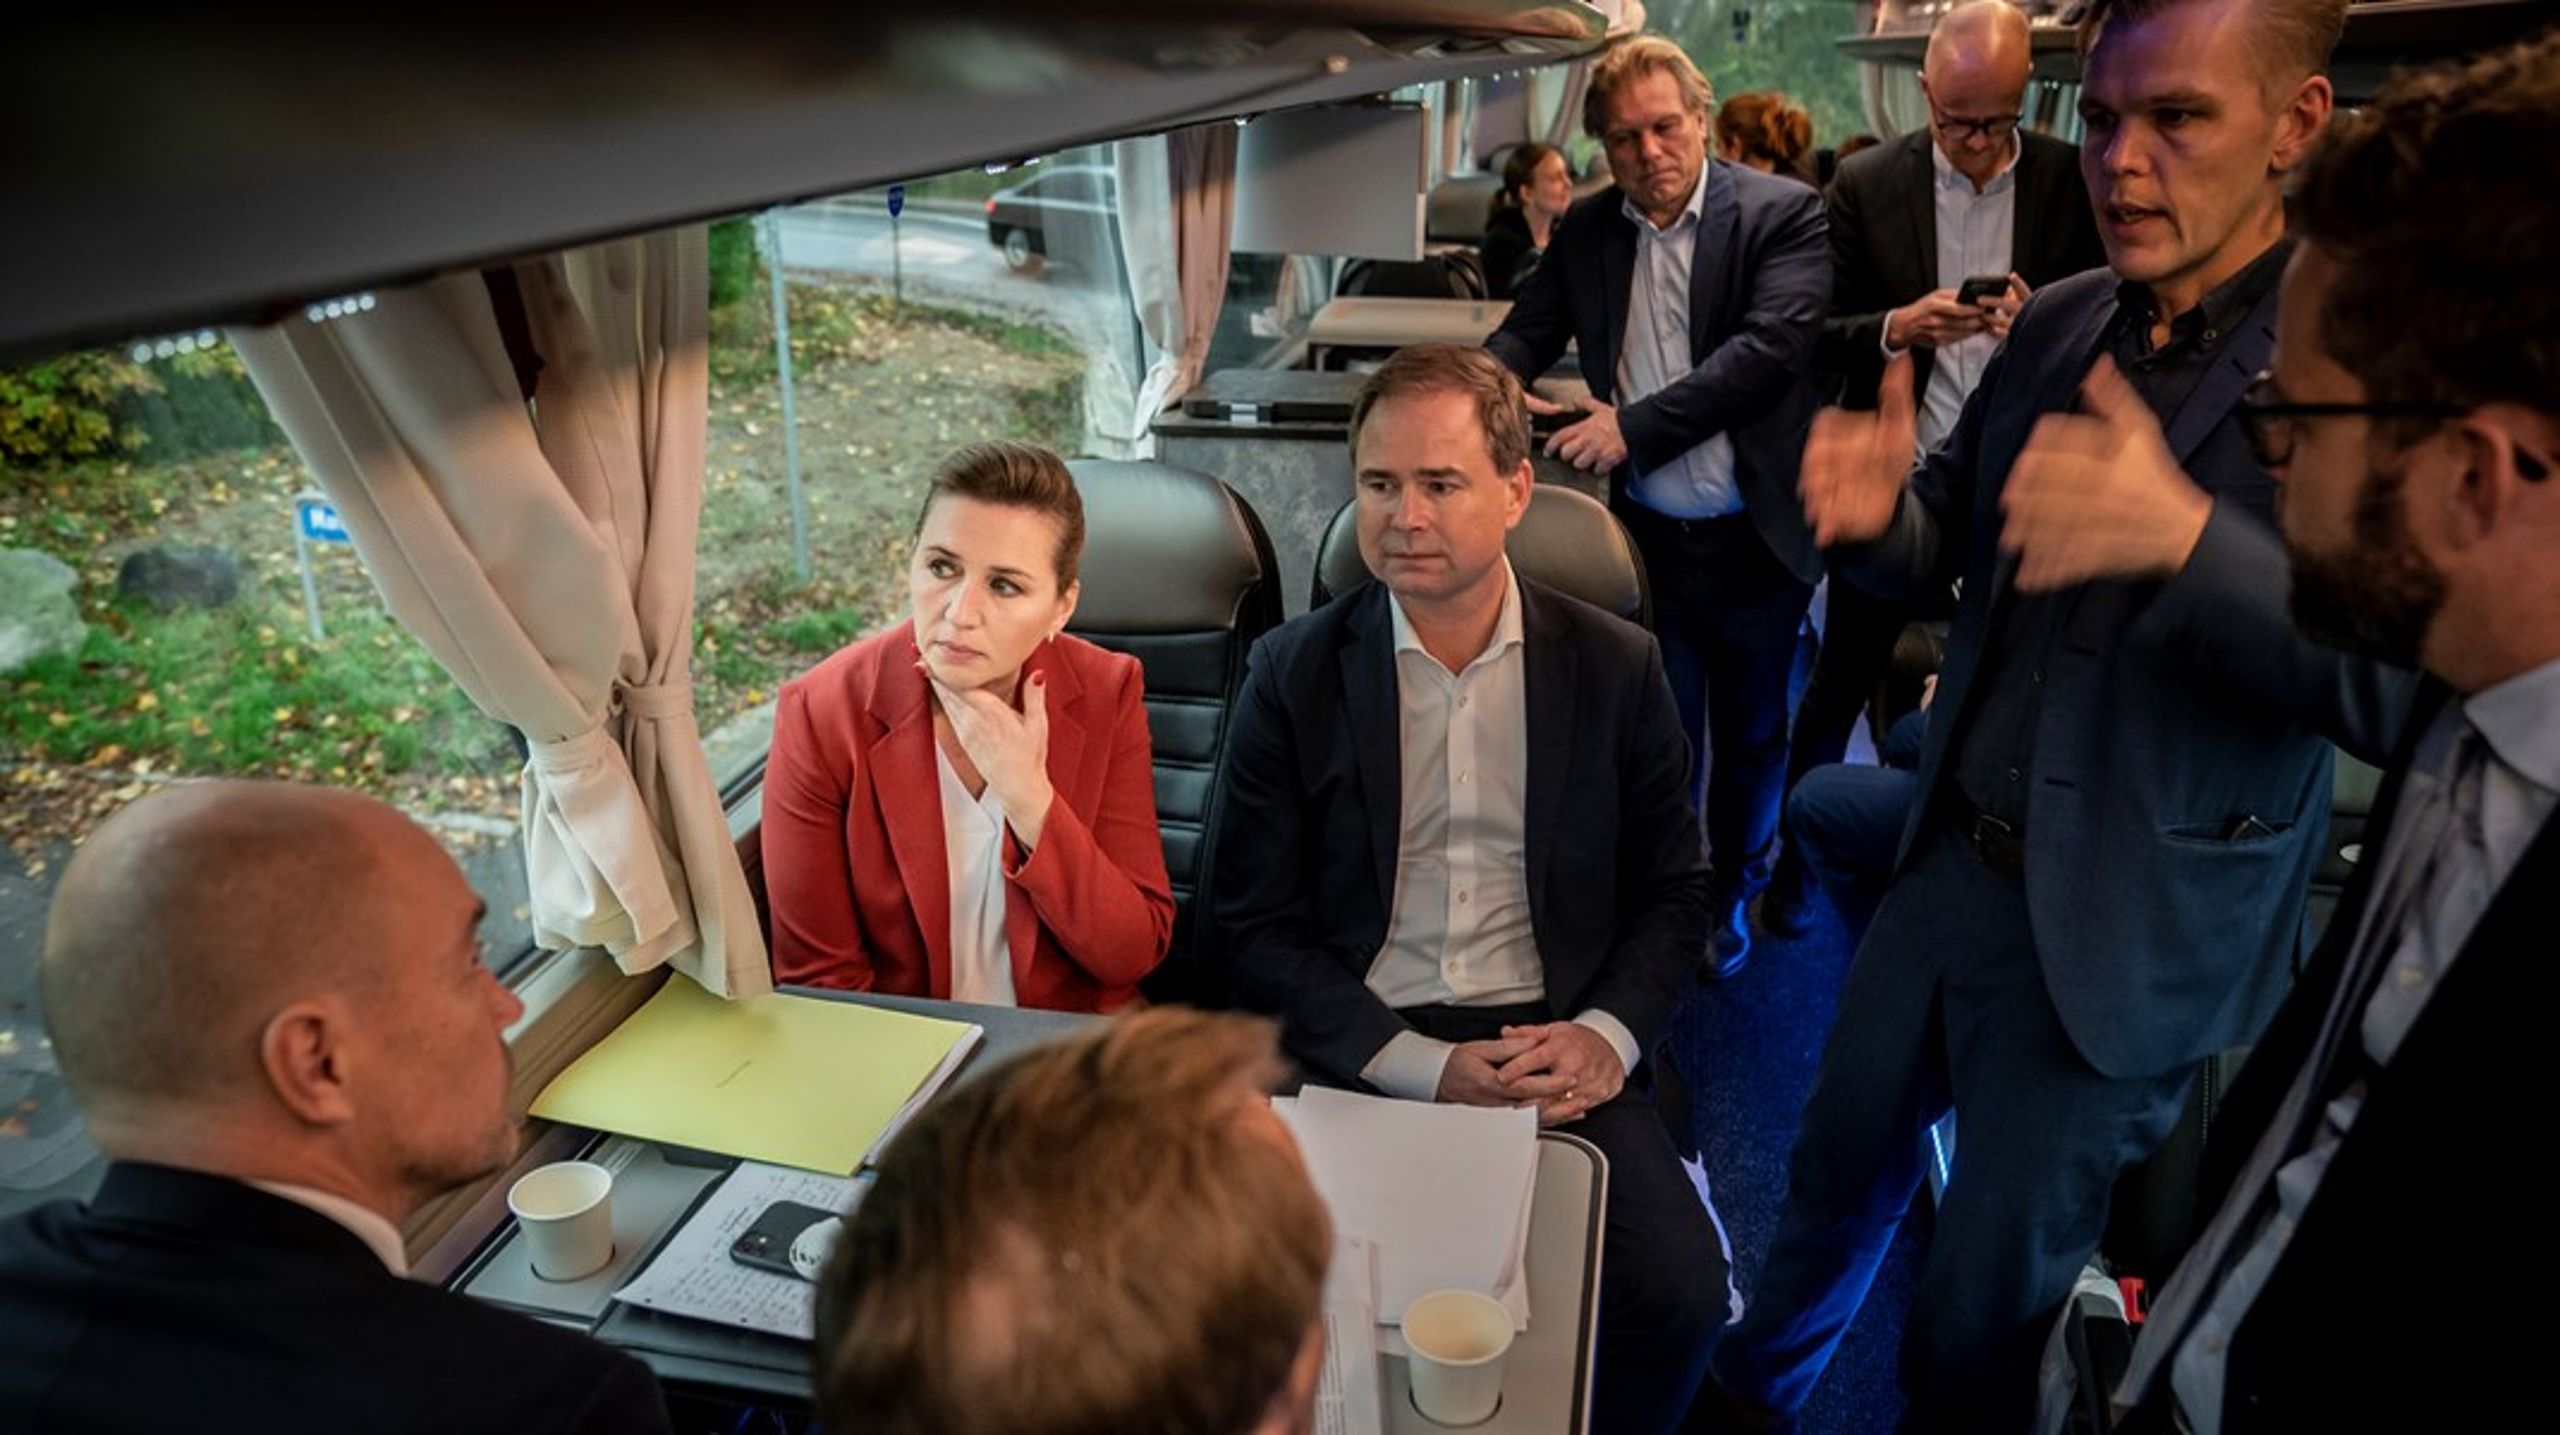 Statsminister Mette Frederiksen (S) på bussturné i valrörelsen. Det återstår att se om hon får regera vidare.